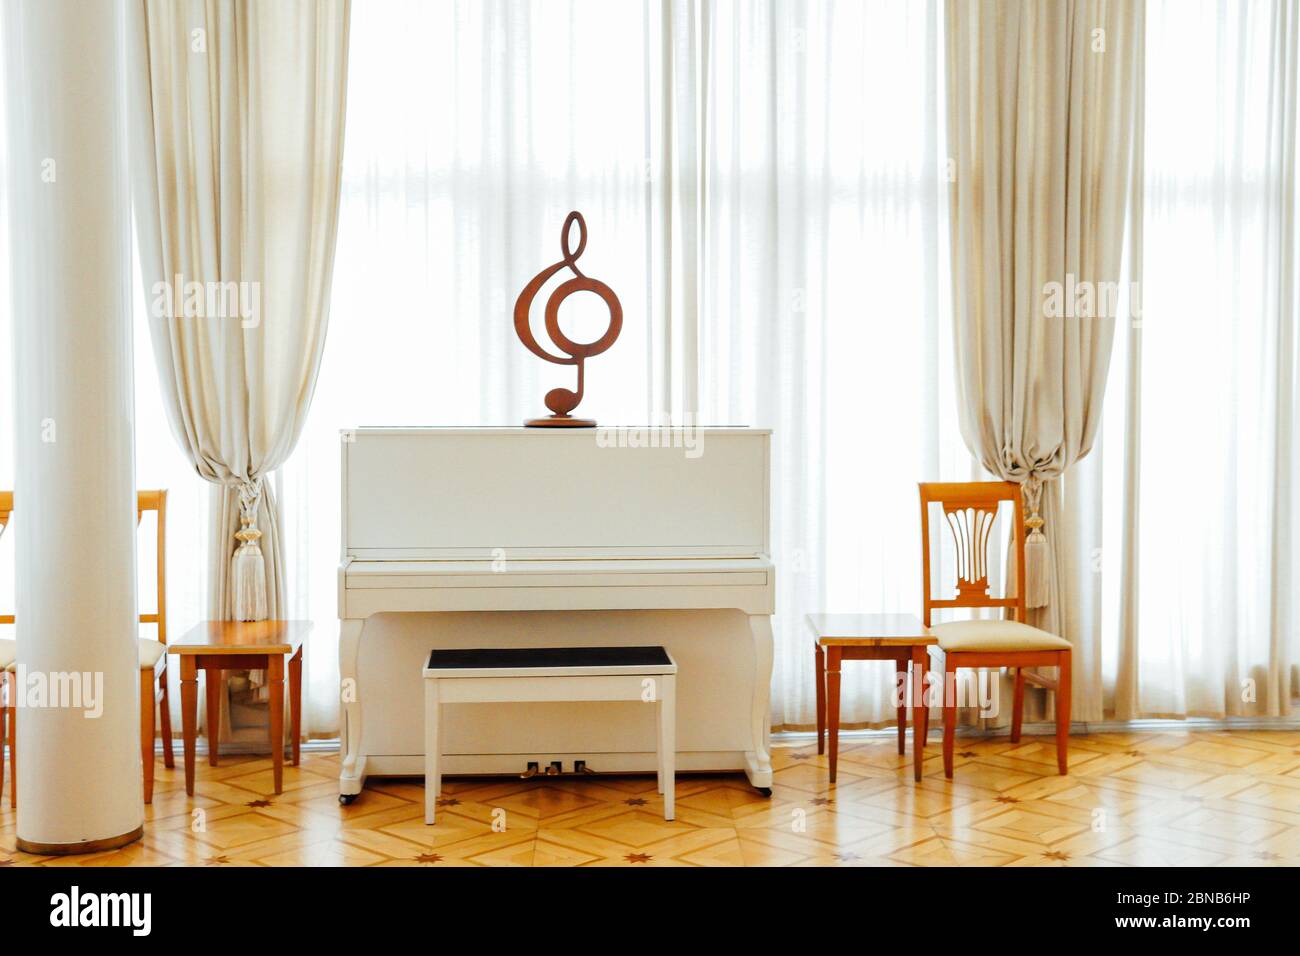 piano blanc pour la musique dans l'intérieur d'une salle blanche avec une fenêtre Banque D'Images